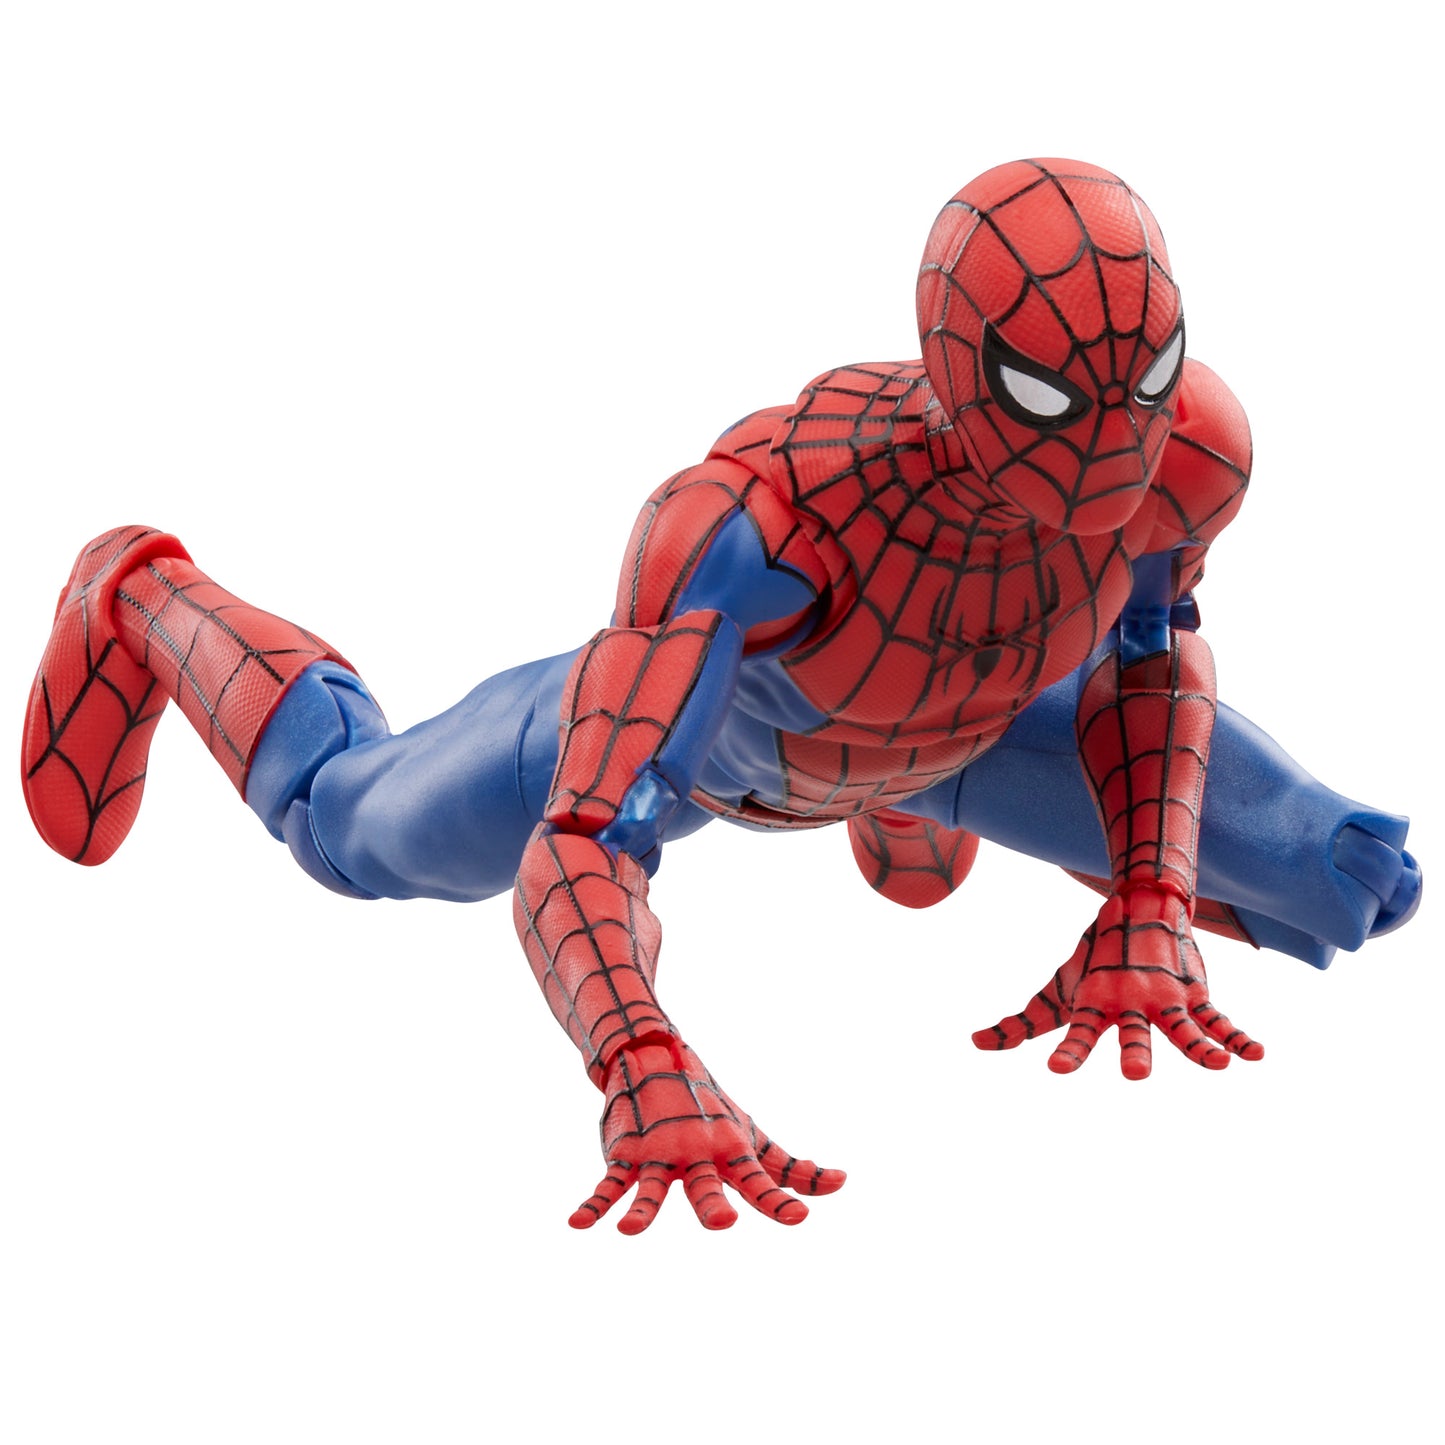 Marvel Legends Series Spider-Man, 6 Marvel Legends Action Figure